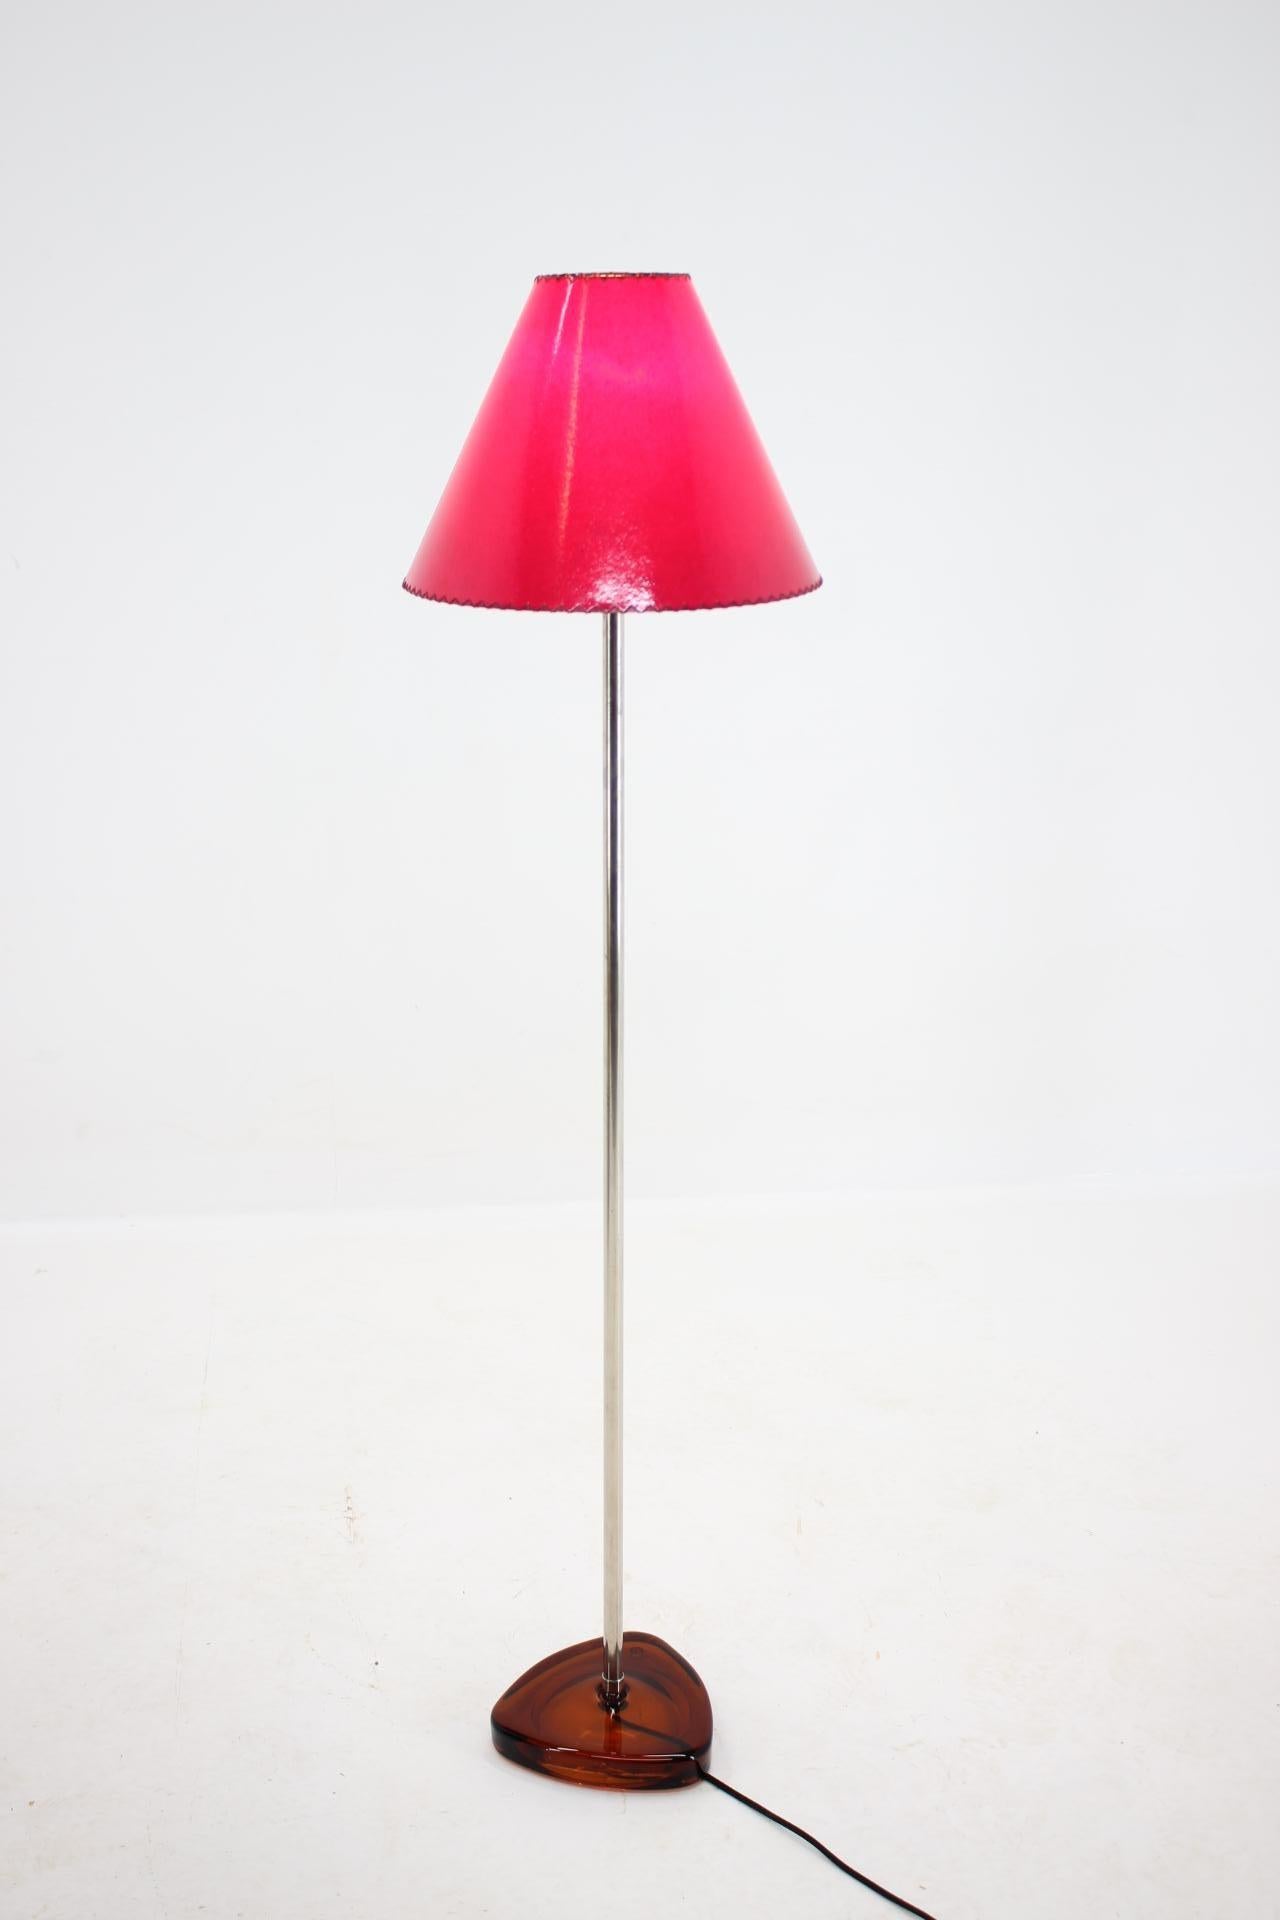 - Neuer handgefertigter Lampenschirm aus handgeschöpftem Papier
- Neu verkabelt
- Inklusive Steckeradapter für US-Bestellung
- Ständer 23 cm.
 